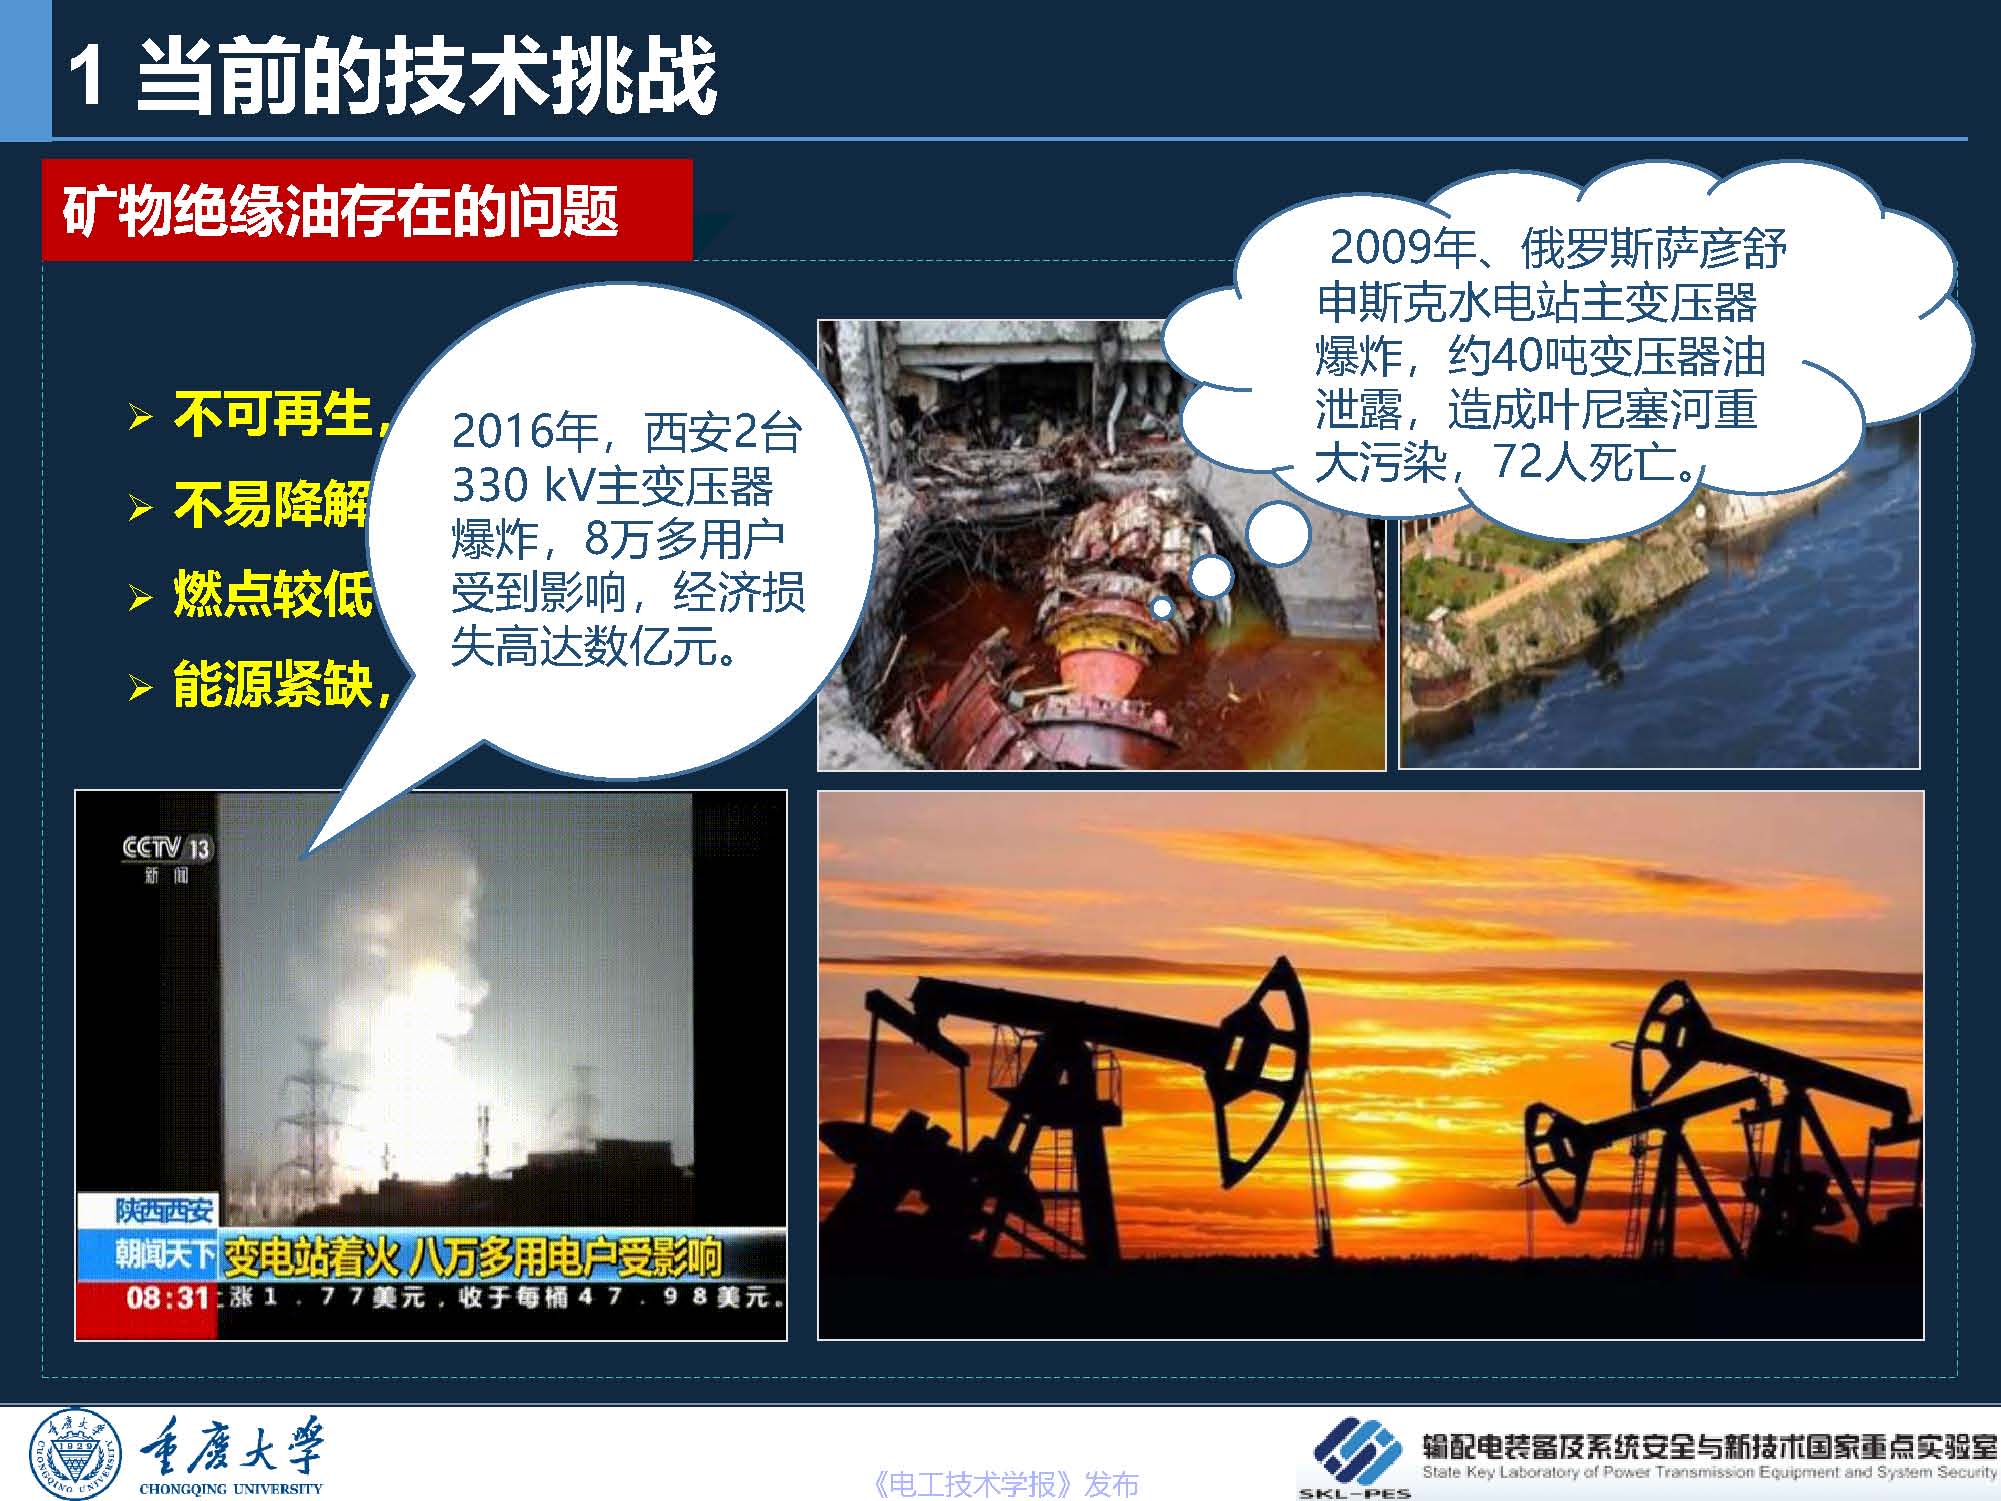 重庆大学 王飞鹏 研究员：环保安全的酯基绝缘油